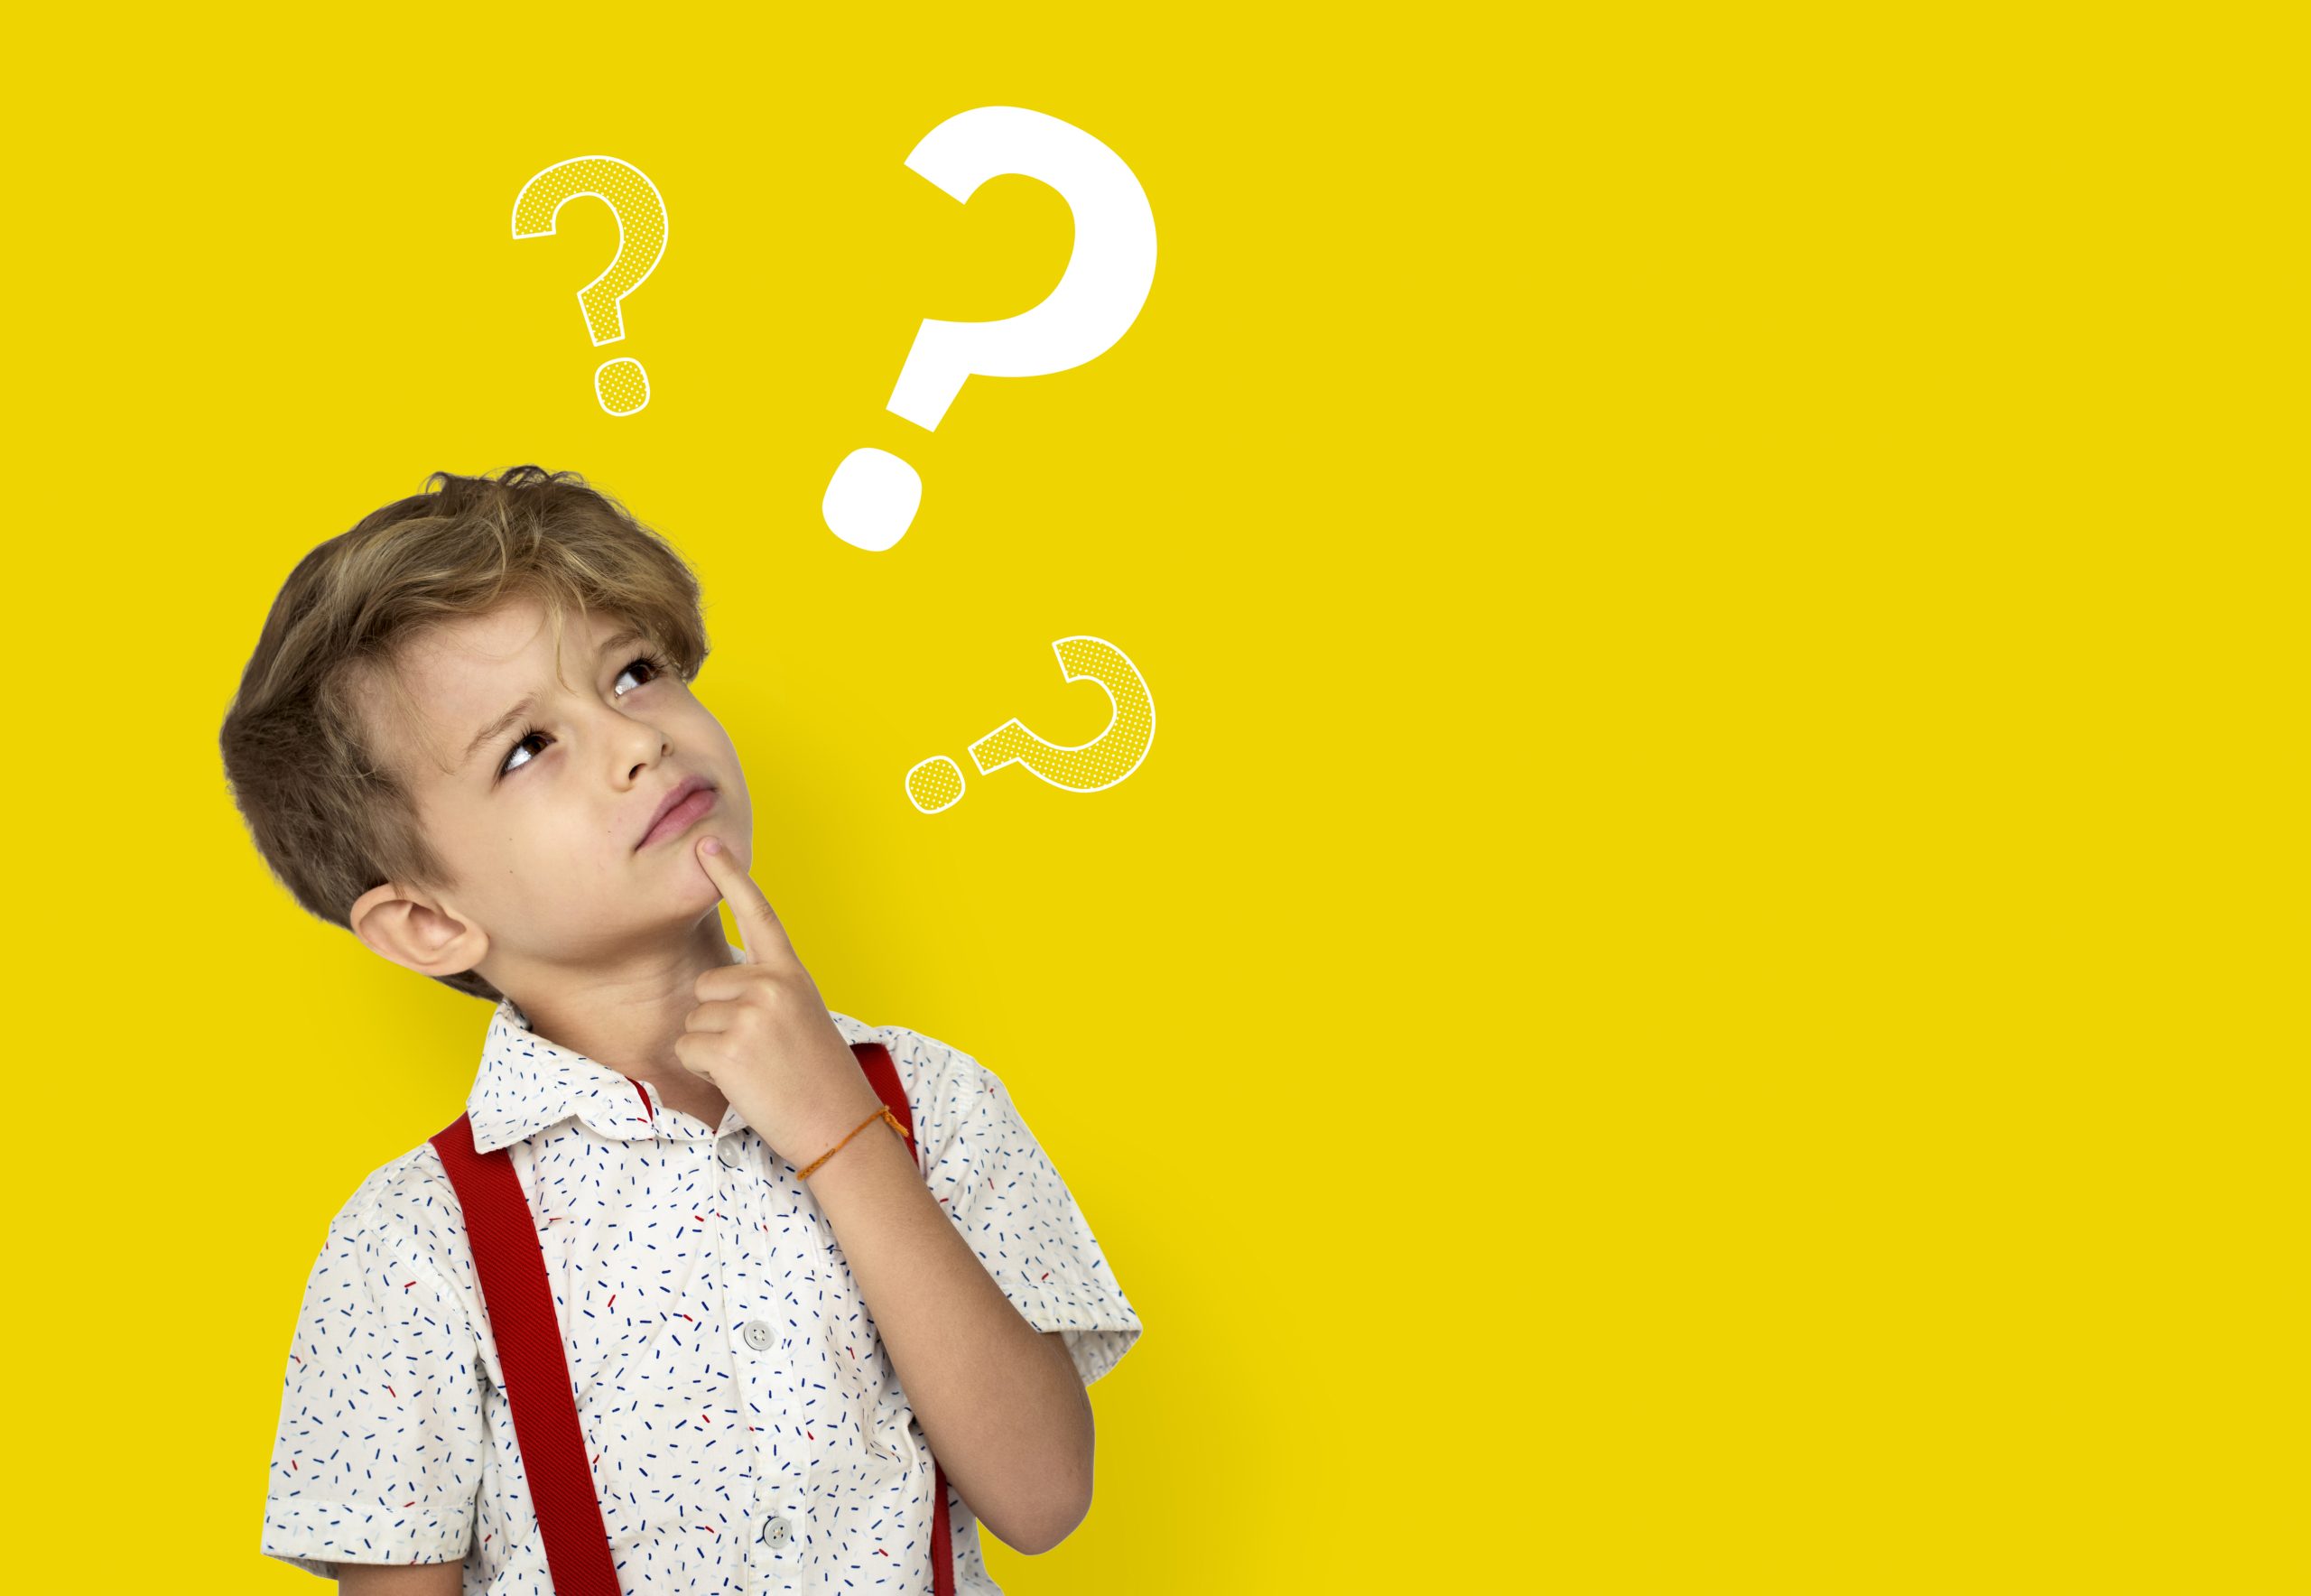 Quais as 10 perguntas de crianças que mais são feitas?